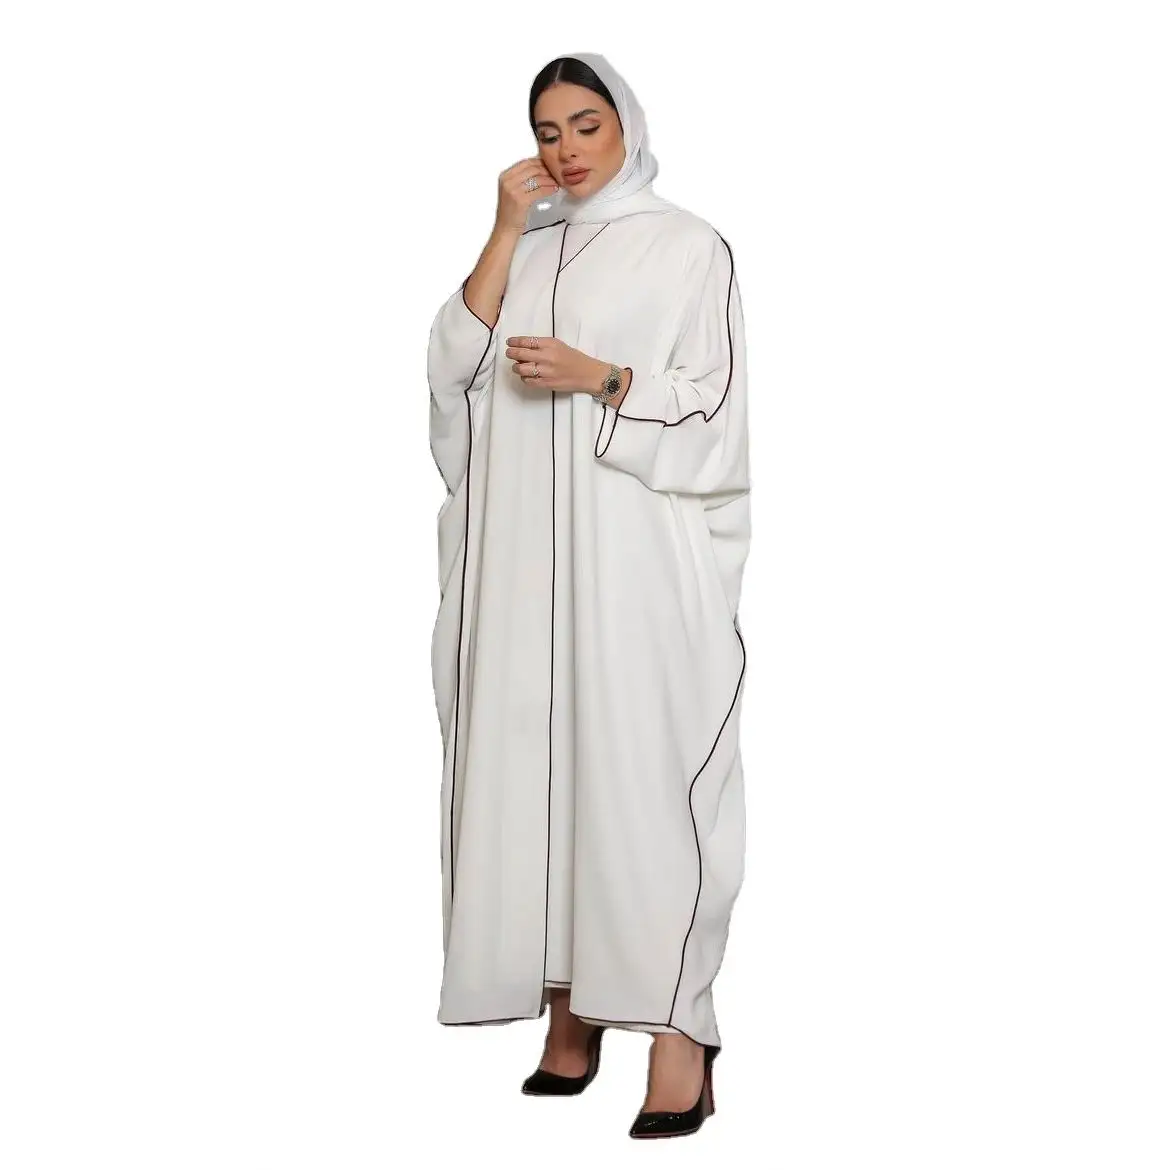 Großhandel türkisches EID Dubai Abaya Kimono bescheidenes Kleid islamische Kleidung elegante Damen muslimisches Kleid Zoom Jazz Crepe offene Abaya